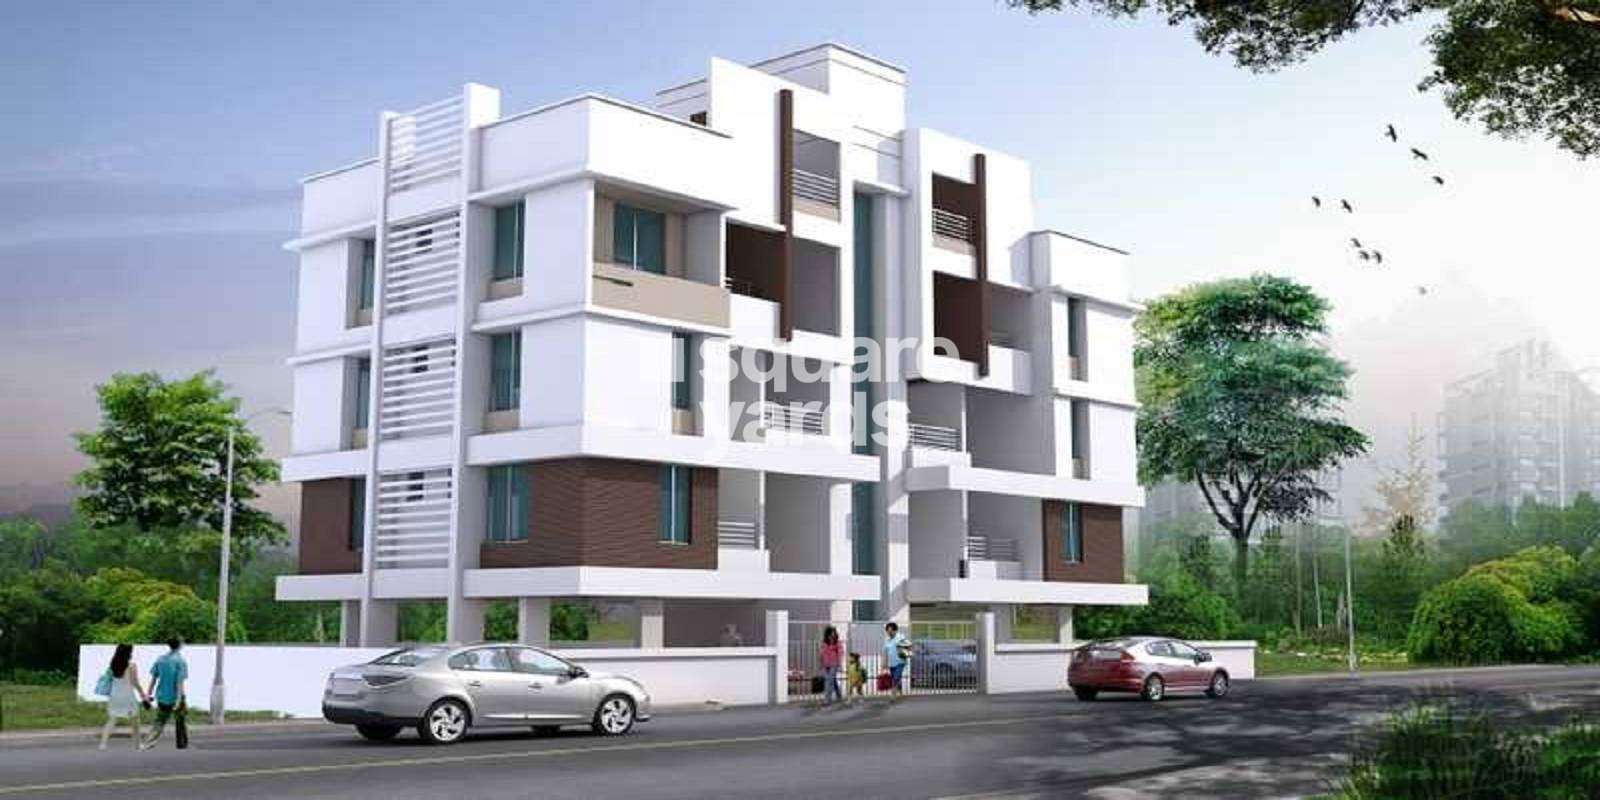 Kusum Shalini Apartments Cover Image